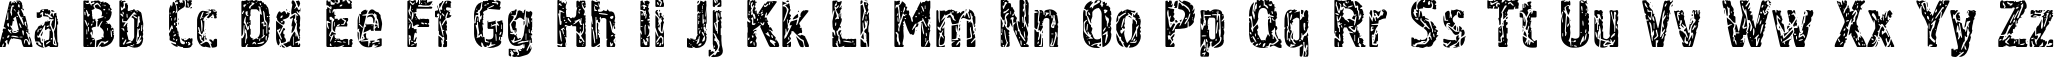 Пример написания английского алфавита шрифтом Pollock3C